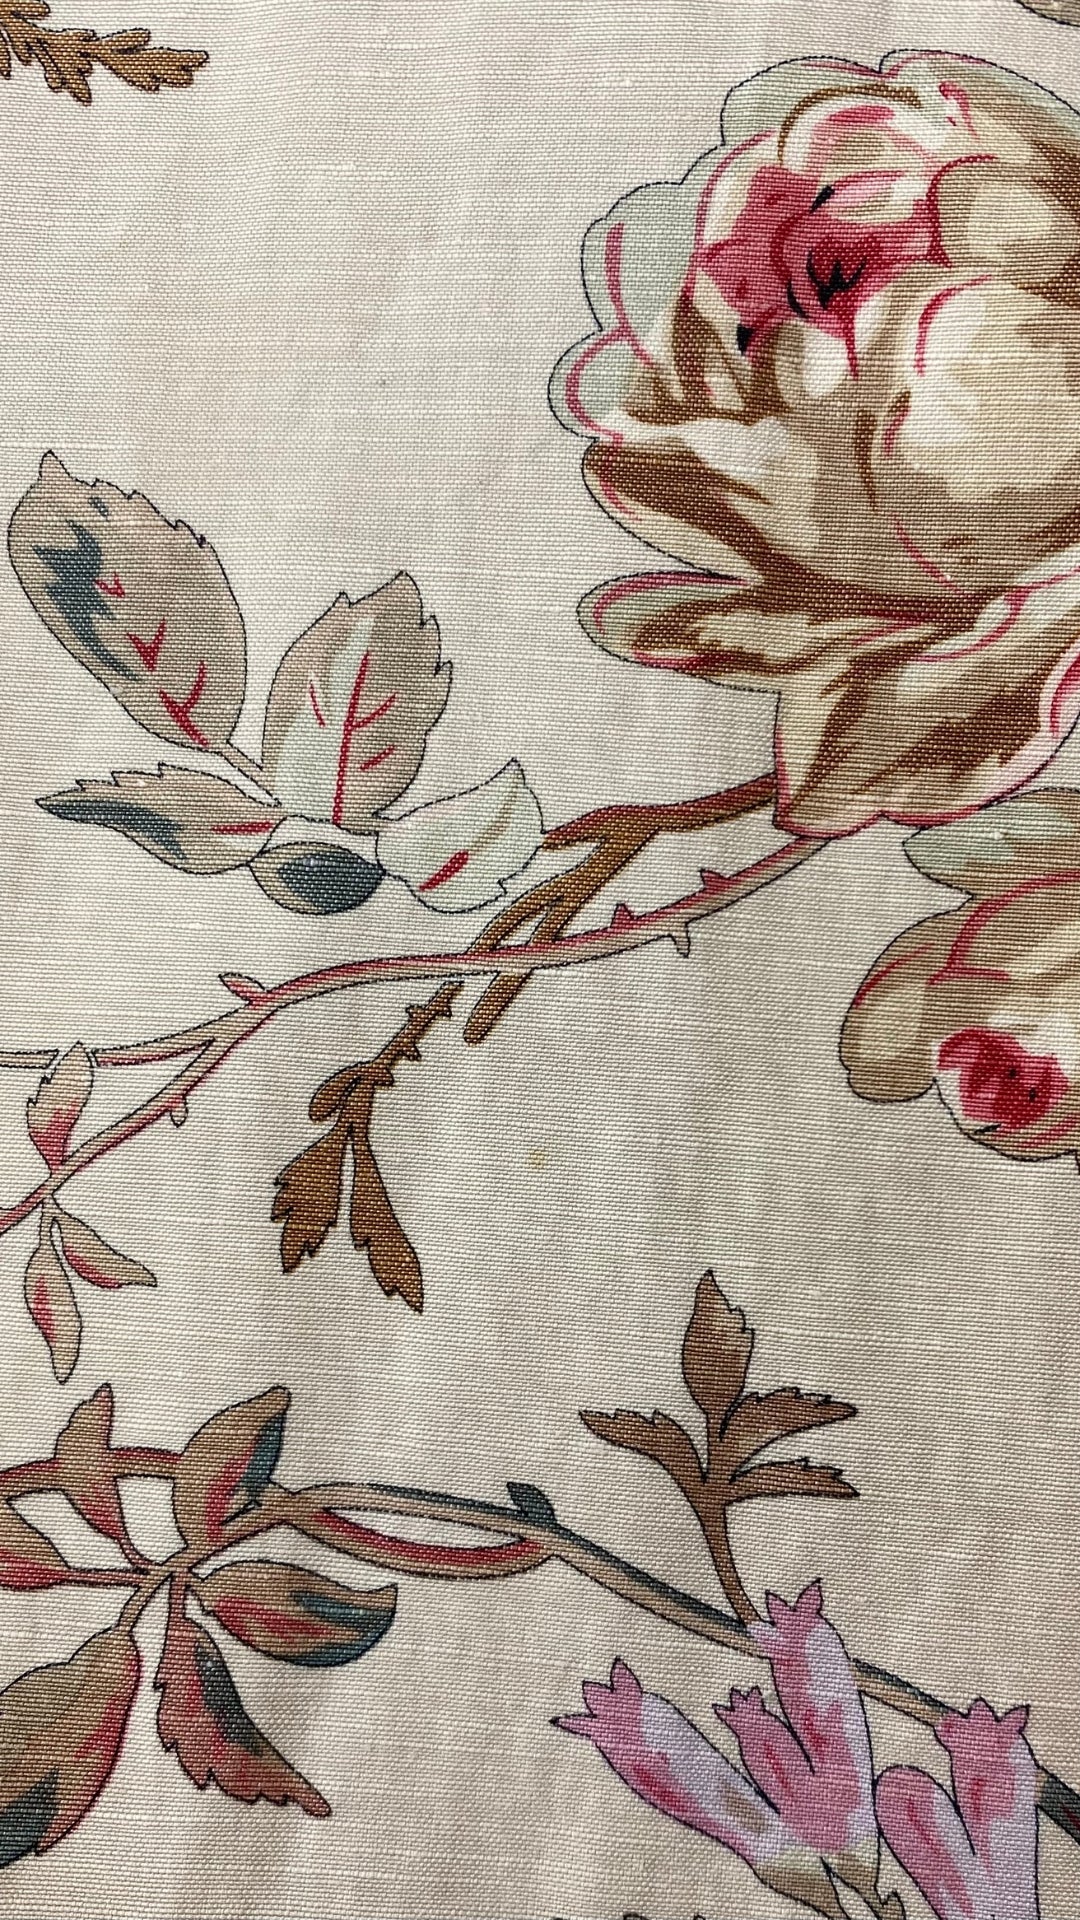 Pantalon motif floral en soie et lin Sutton Studio, taille 10. Vue de près du tissu et de mini taches.